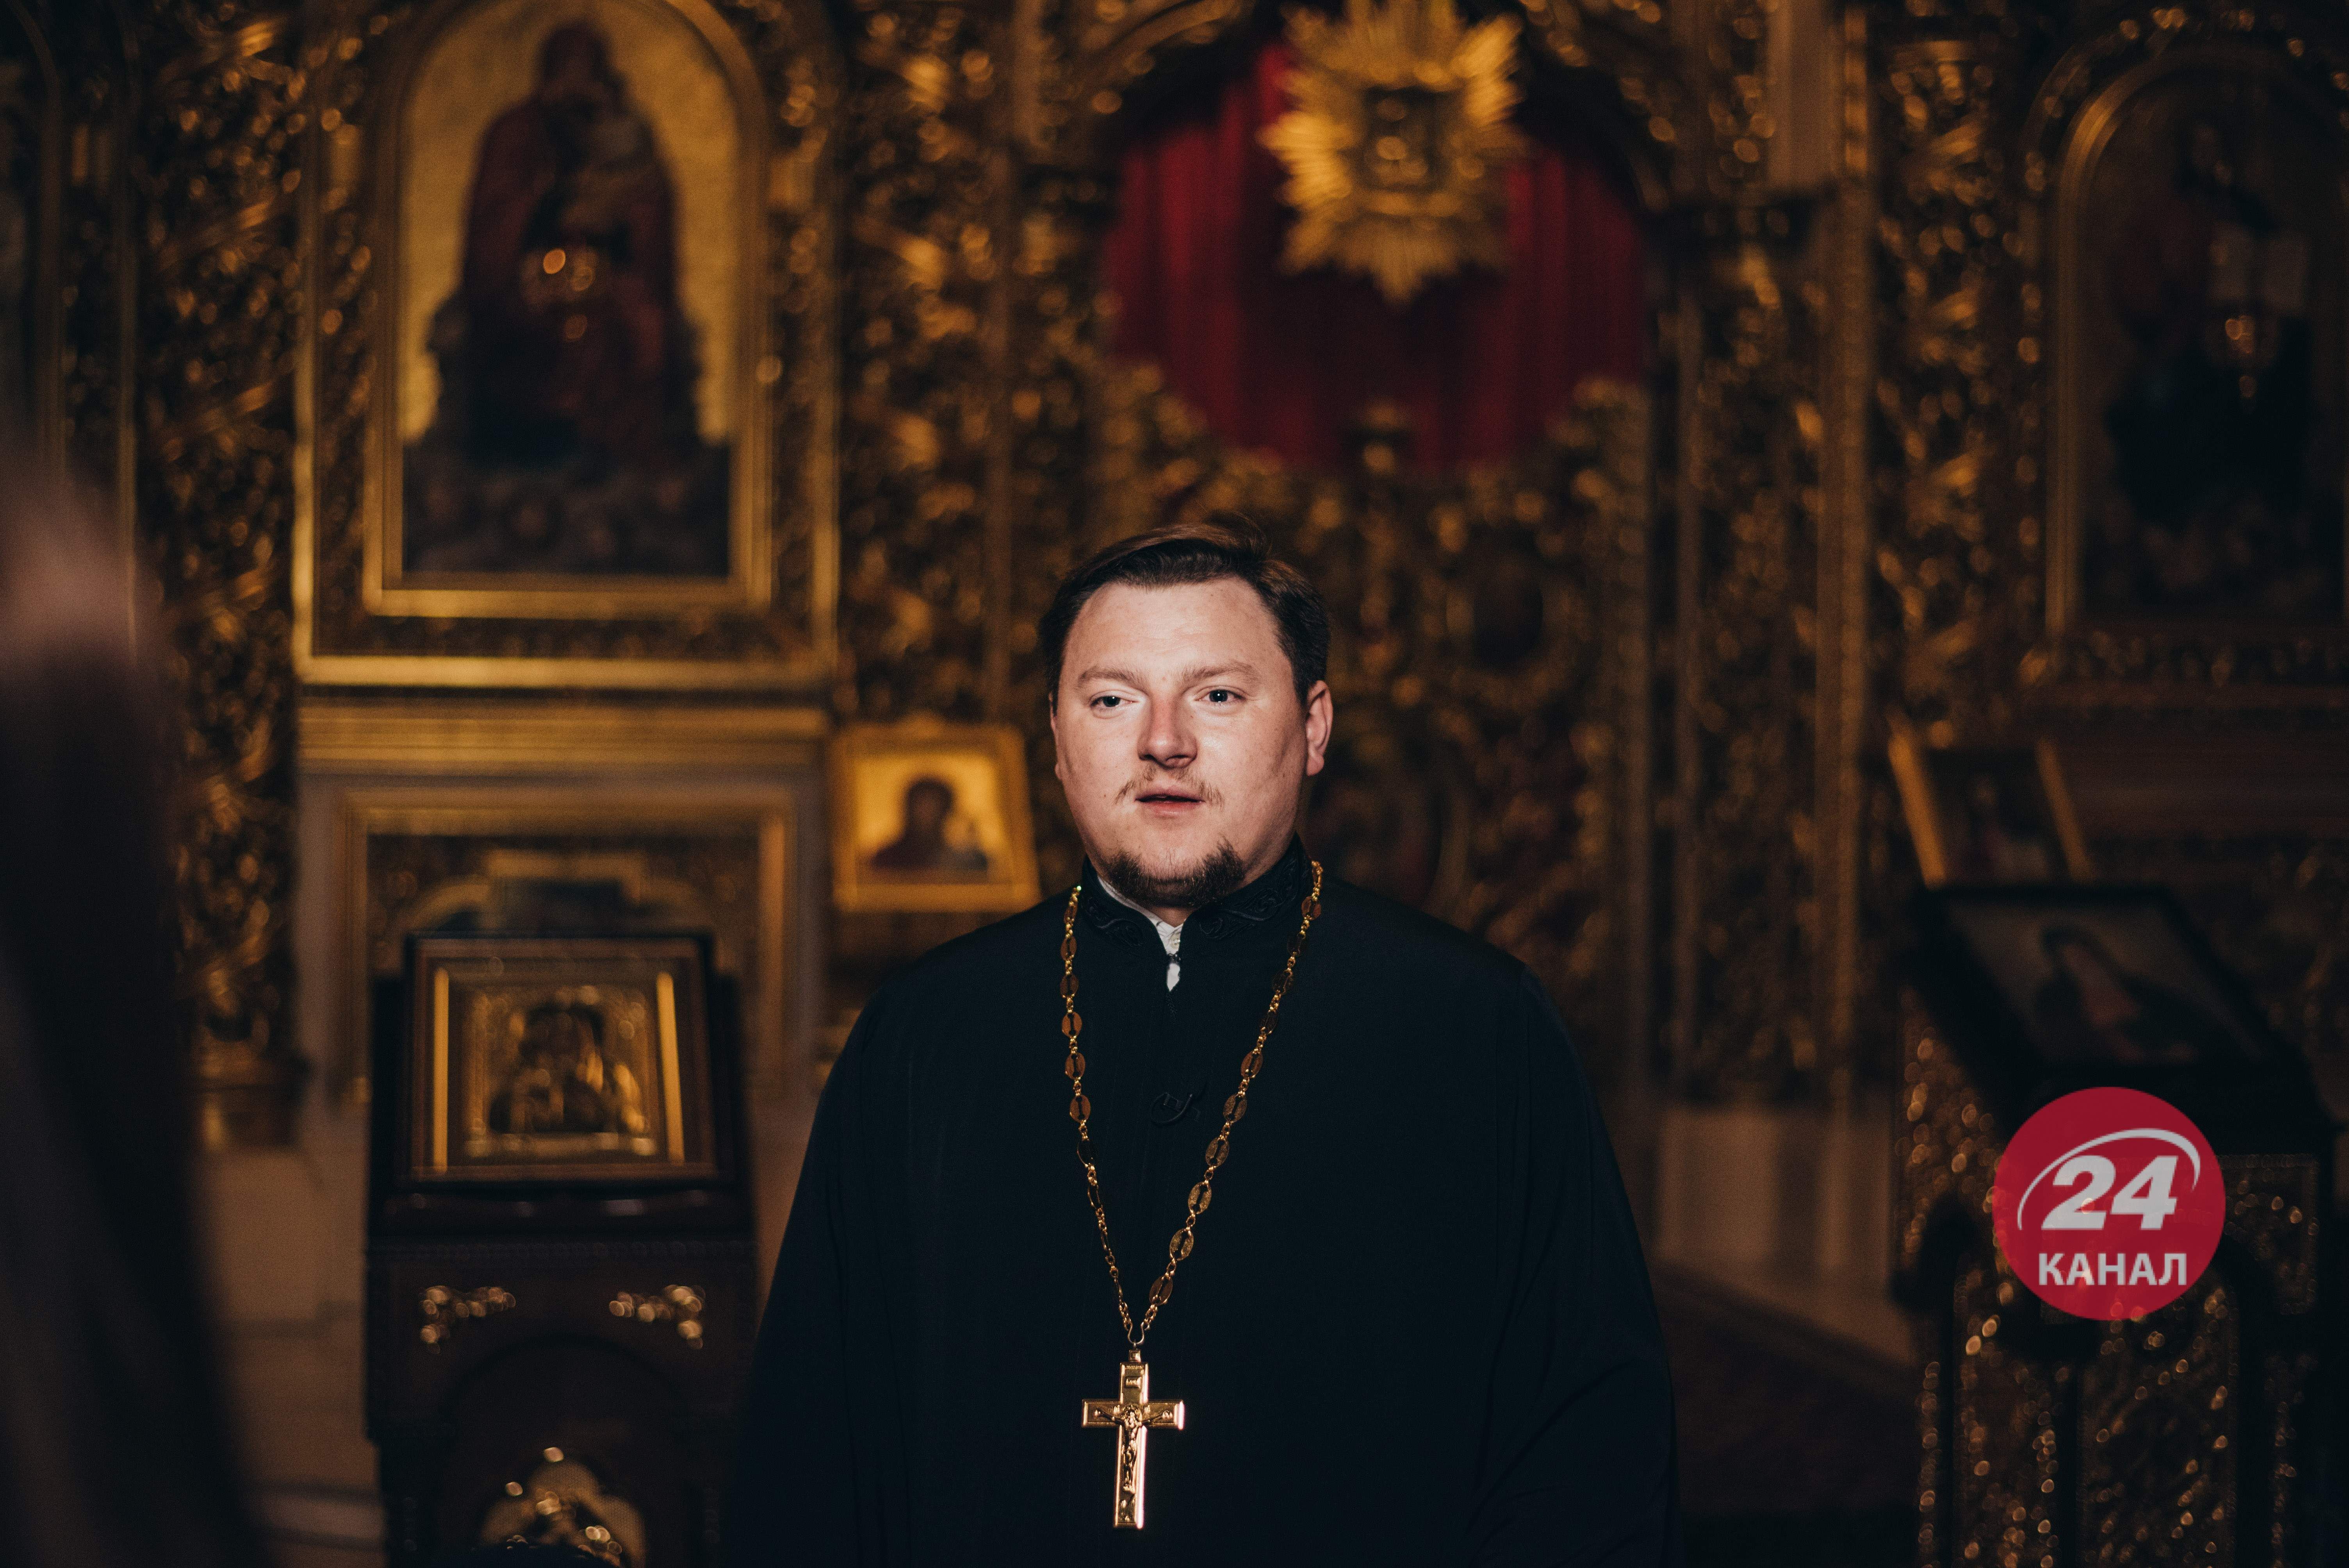 Были угрозы, что нужно "разобраться" за колокола, – священник об угрозах от Януковича